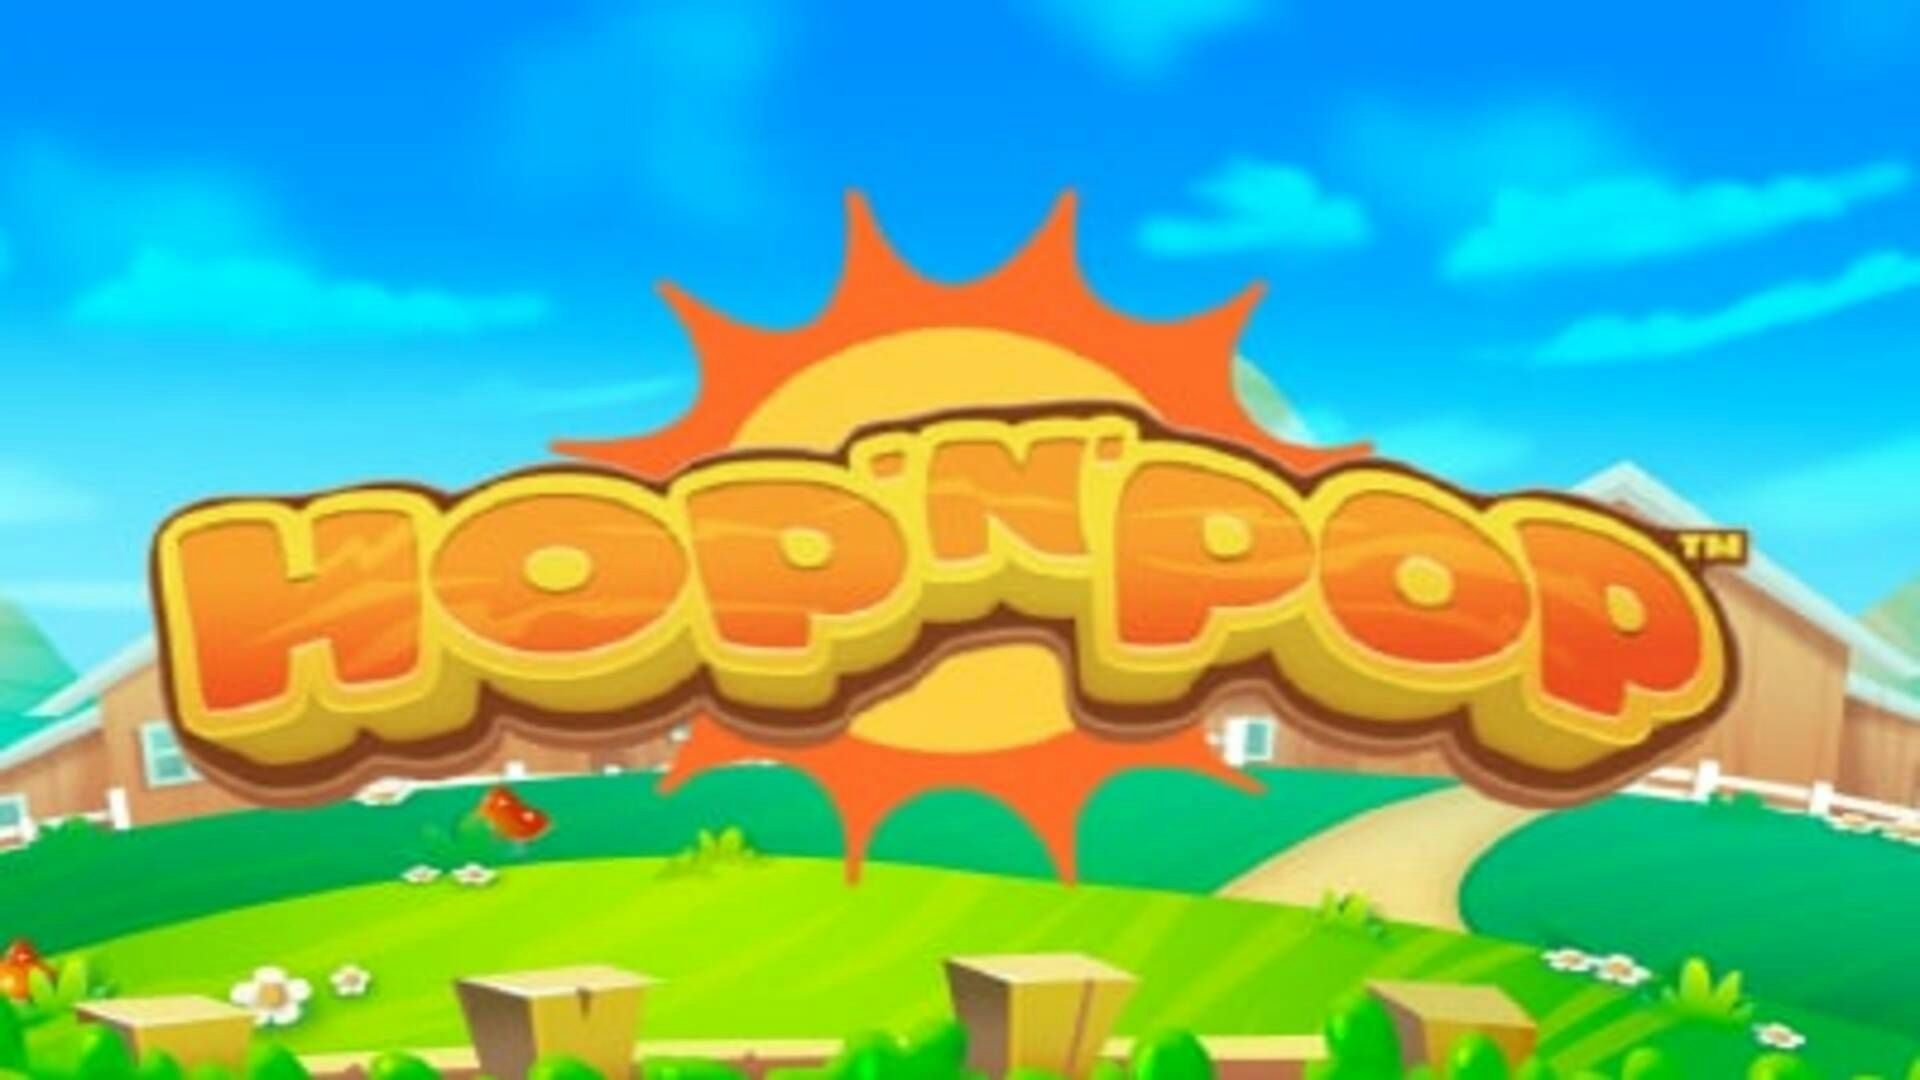 Hop' n' Pop